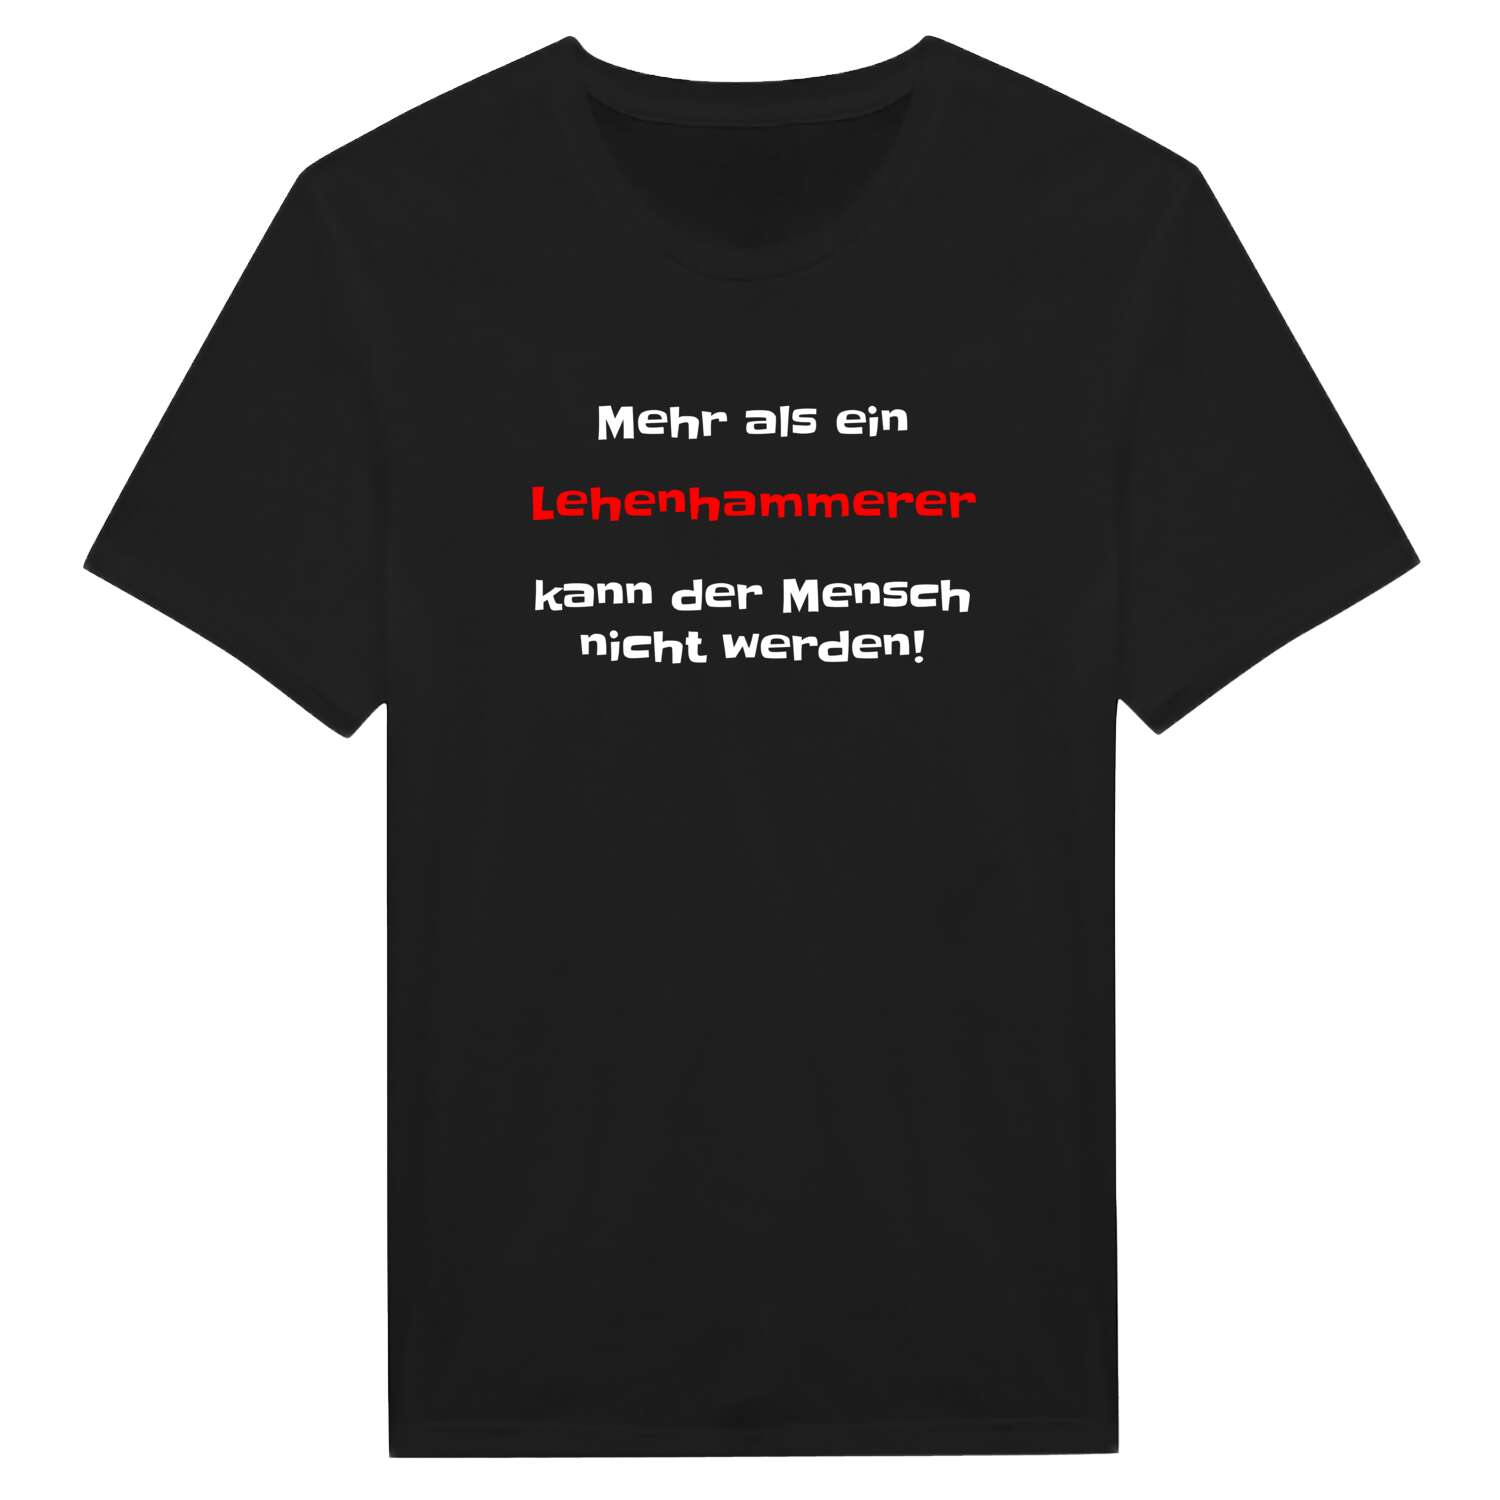 Lehenhammer T-Shirt »Mehr als ein«